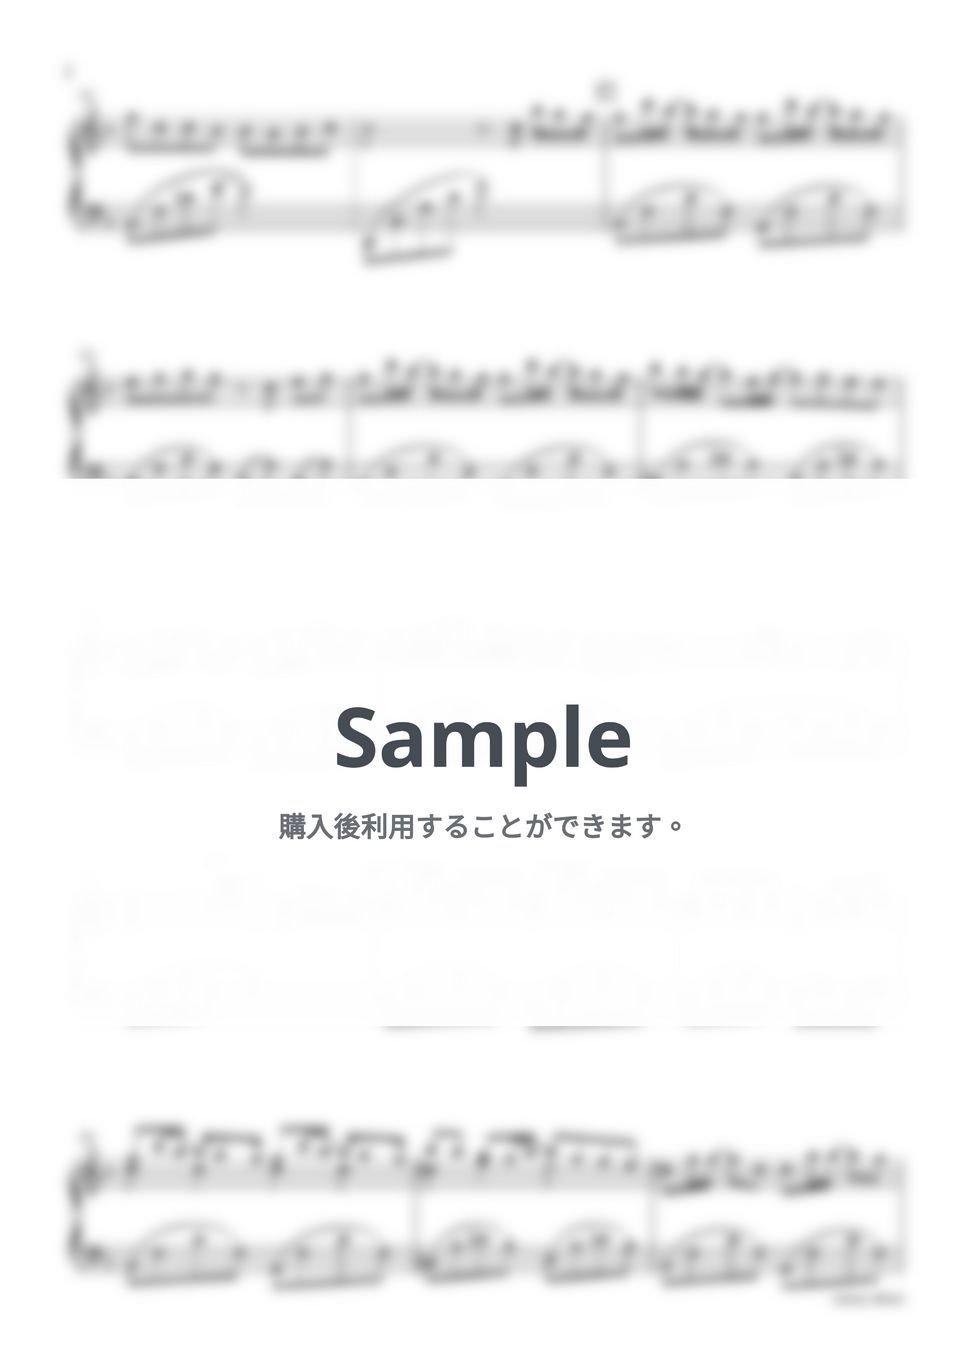 優里 - ベテルギウス -Piano Version- by sammy